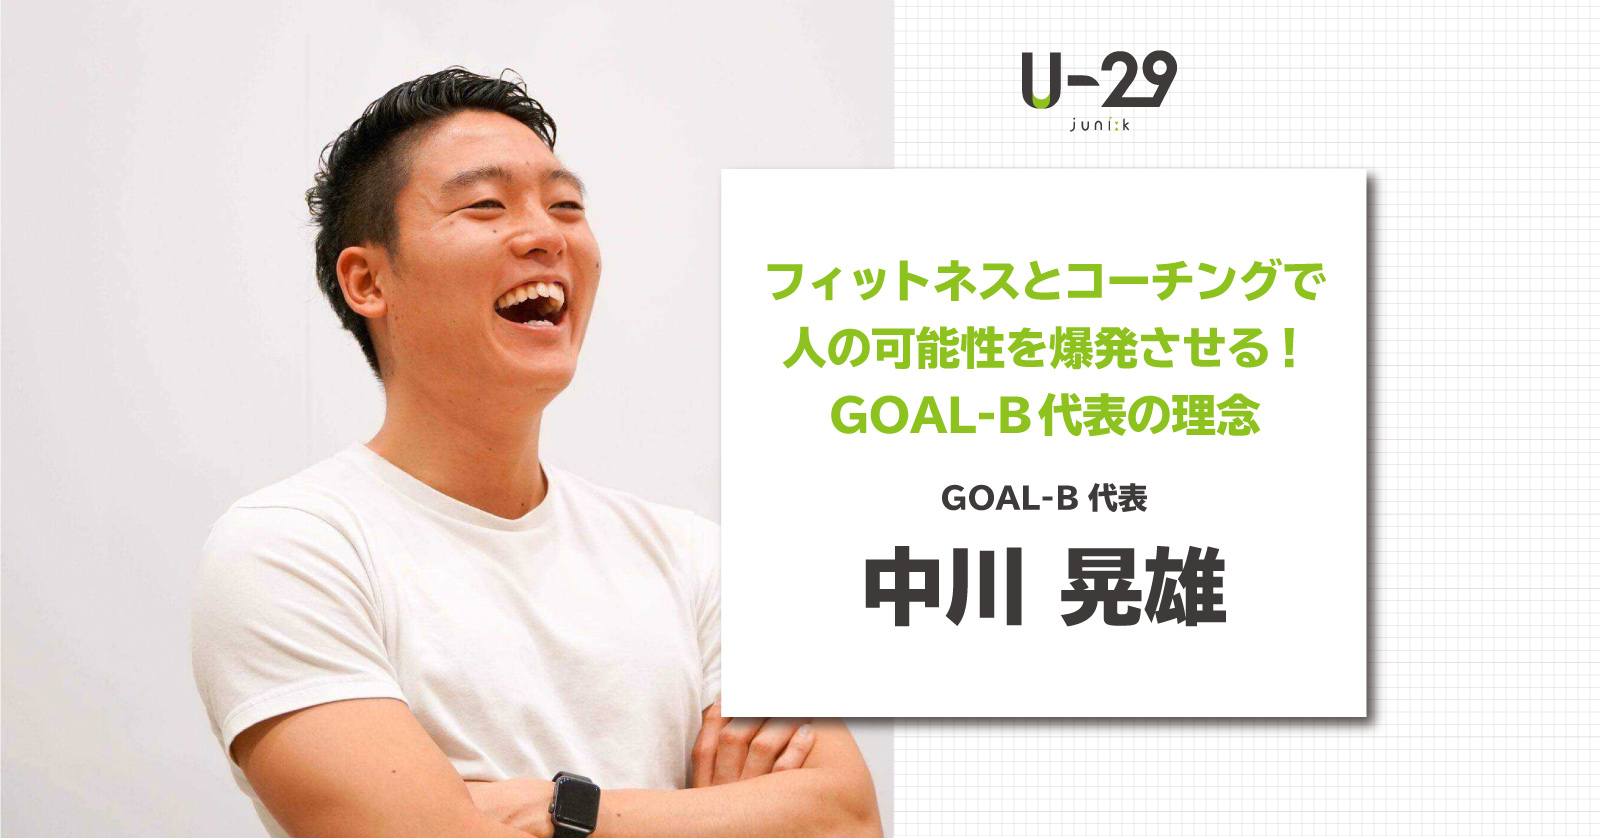 フィットネスとコーチングで人の可能性を爆発させる Goal B代表の中川晃雄の理念 U 29 Com